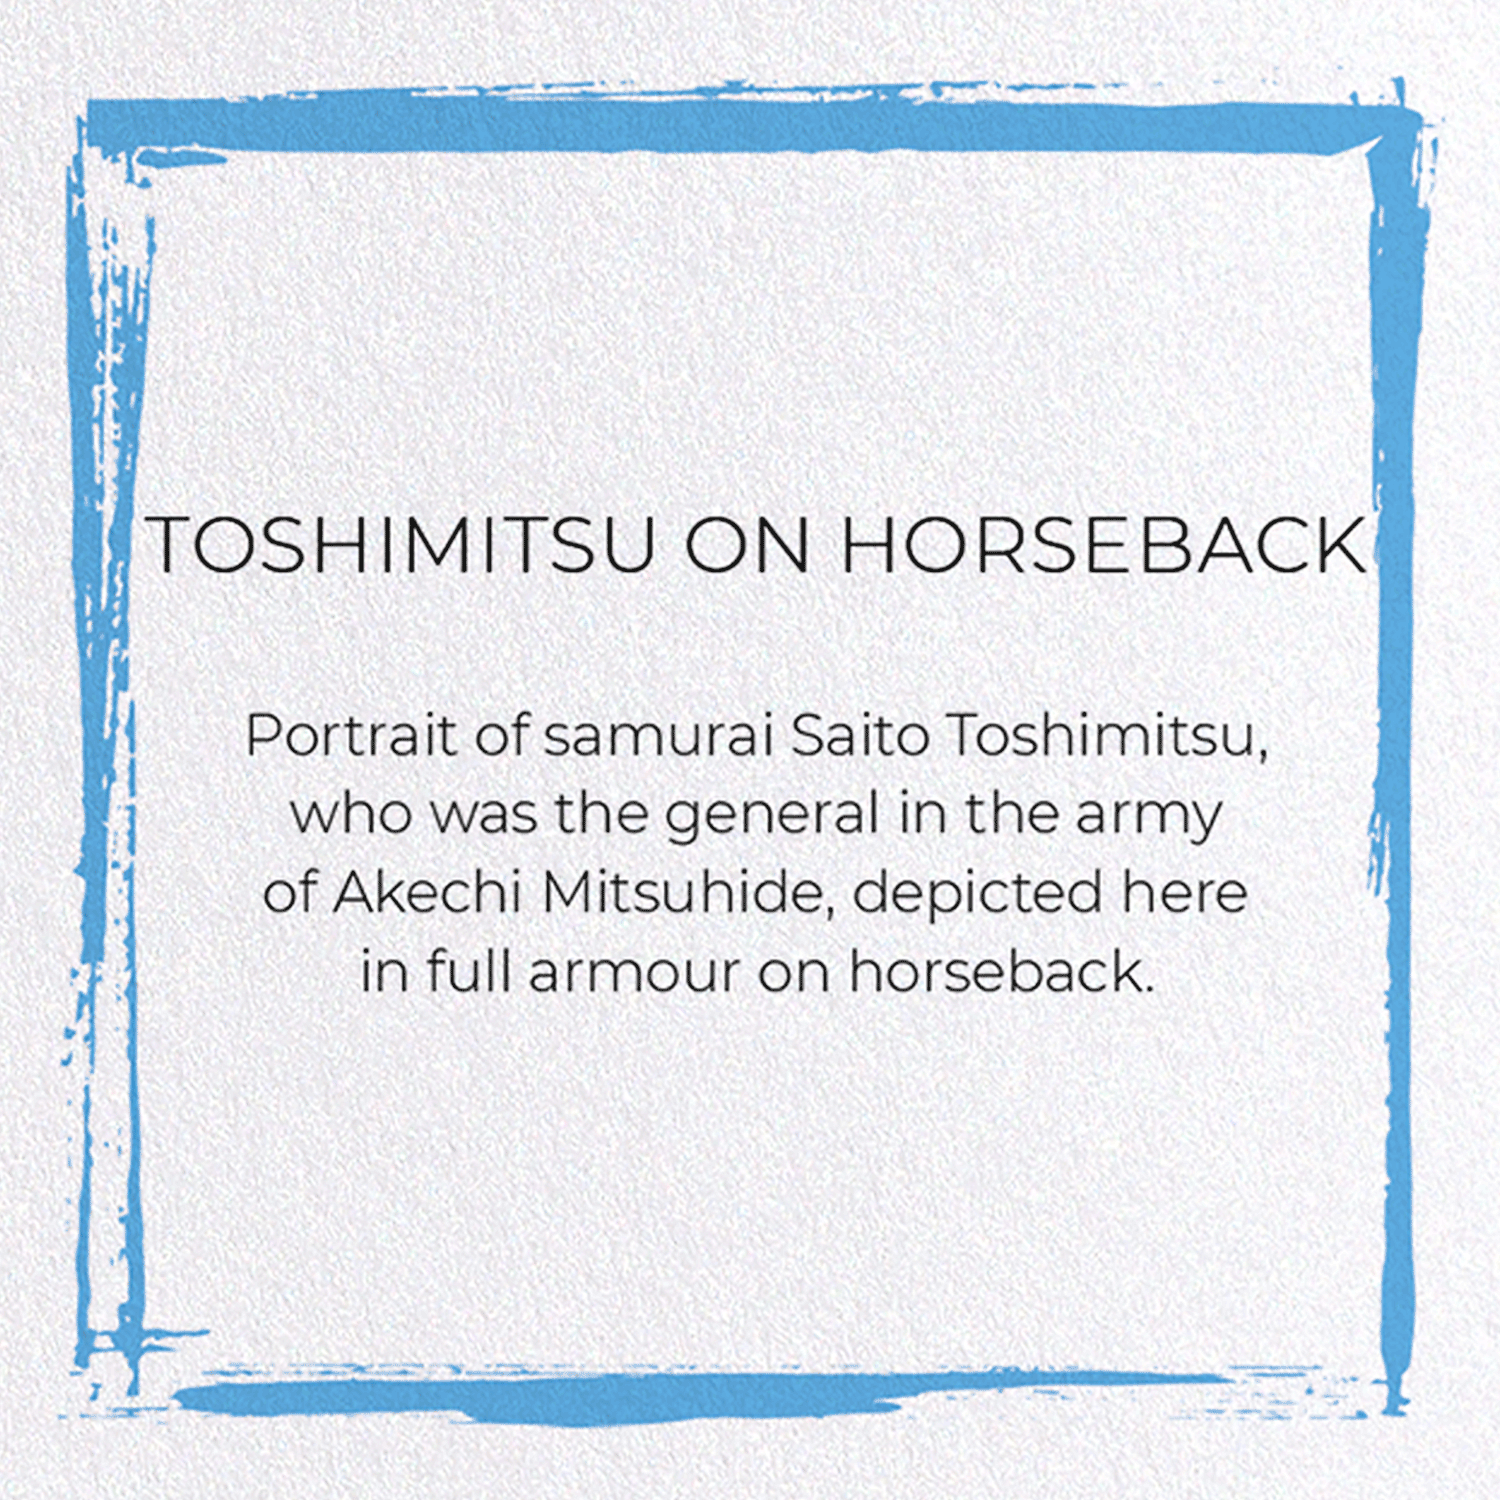 TOSHIMITSU ON HORSEBACK: Japanese Greeting Card